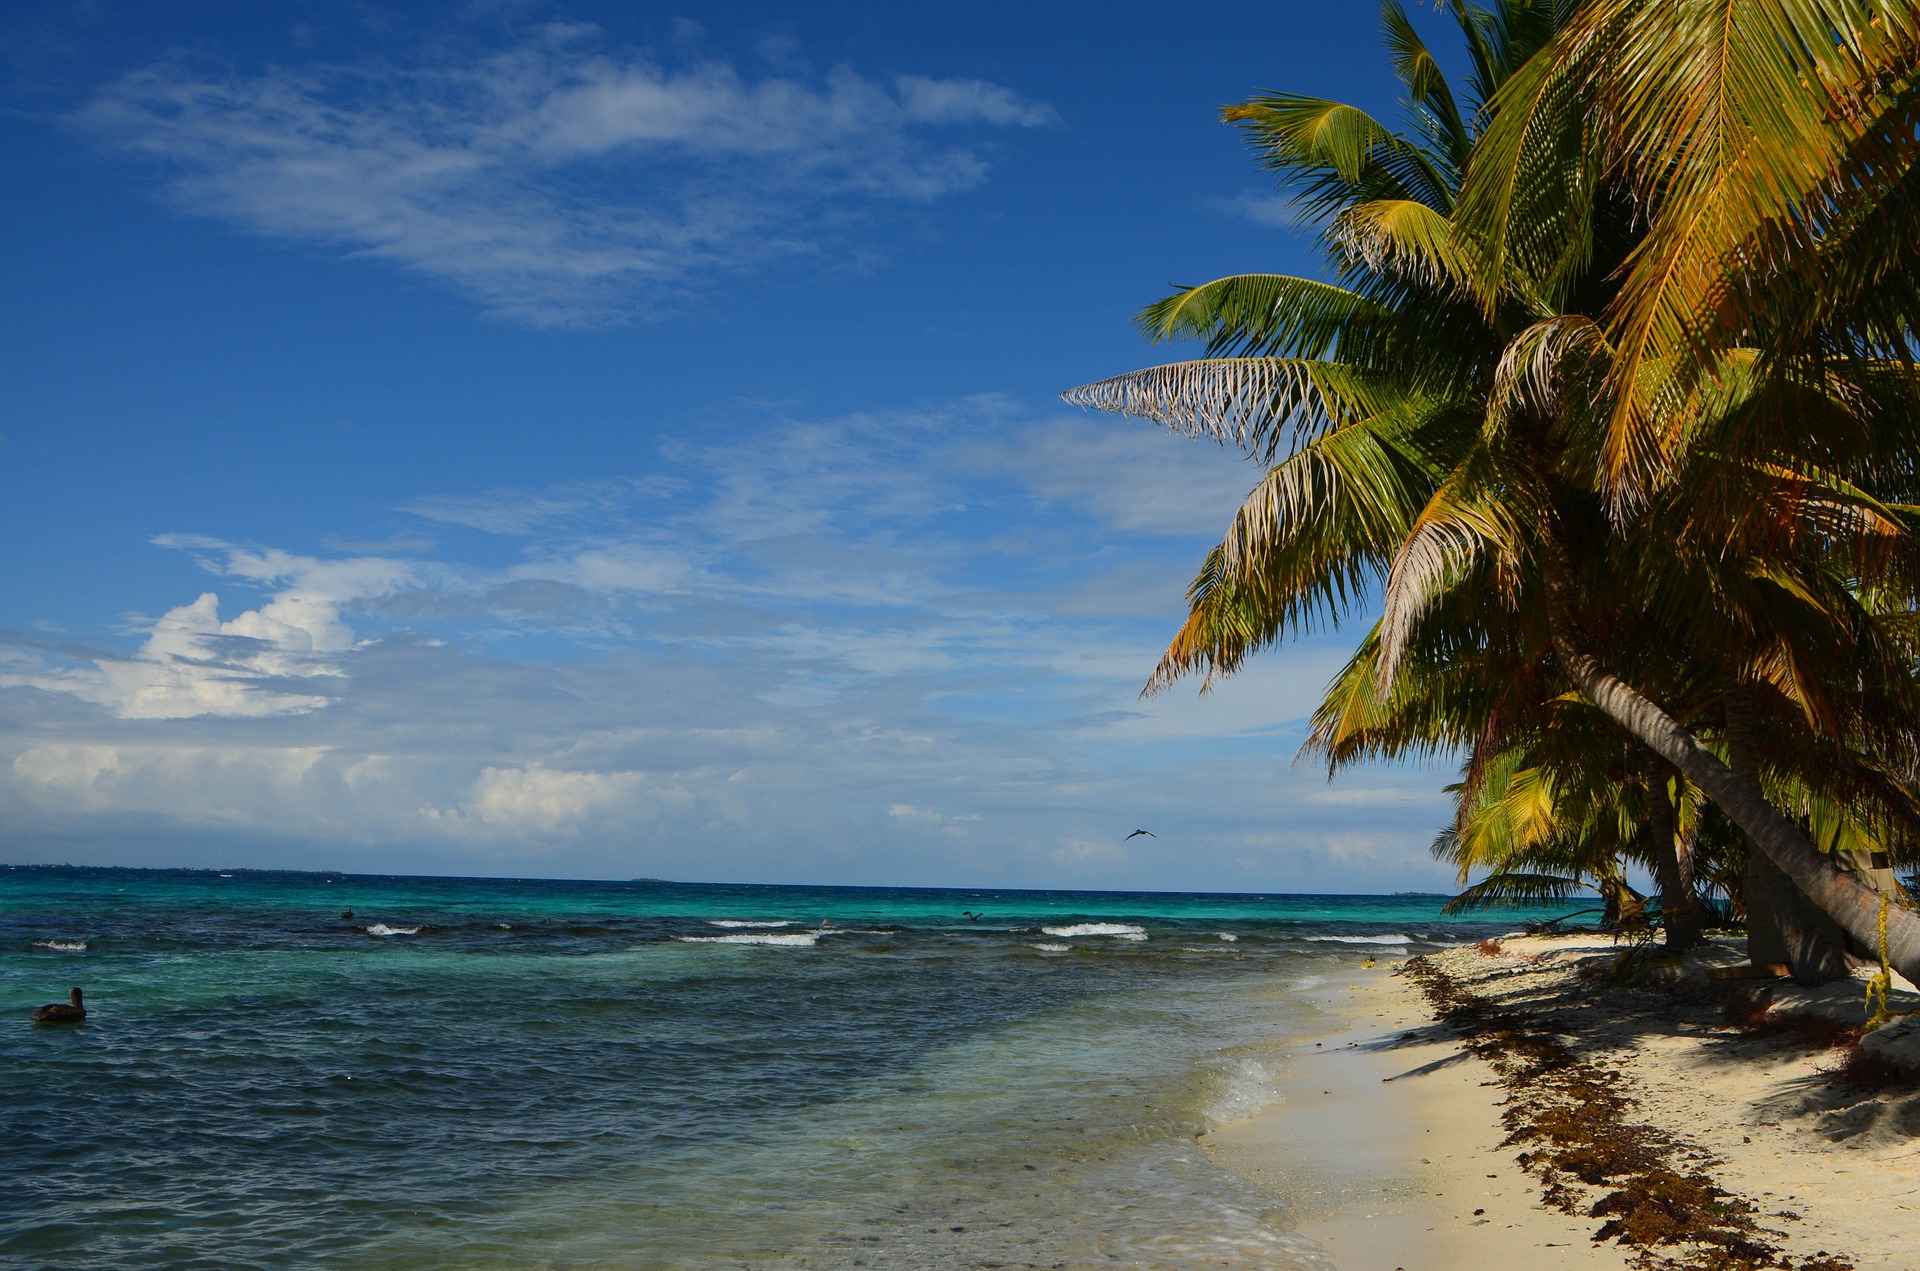 Карибское море. Белиз Карибы. Округ Кайо Белиз. Пляж Пеликан, Белиз. Побережье Карибского моря.